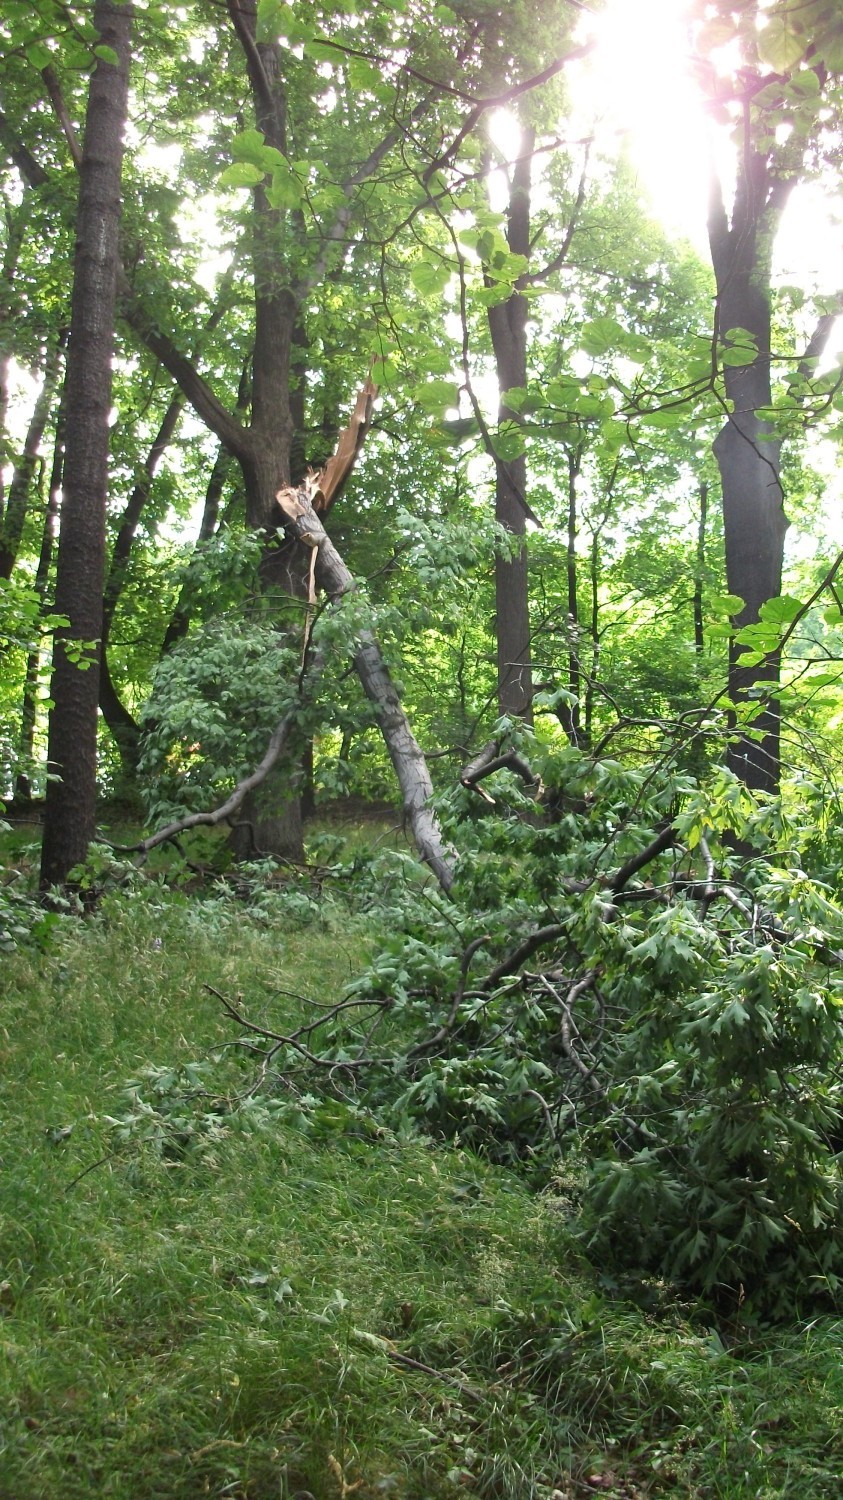 W parku w wałbrzyskiej dzielnicy Sobięcin z jednego z drzew obłamała się olbrzymia gałąź